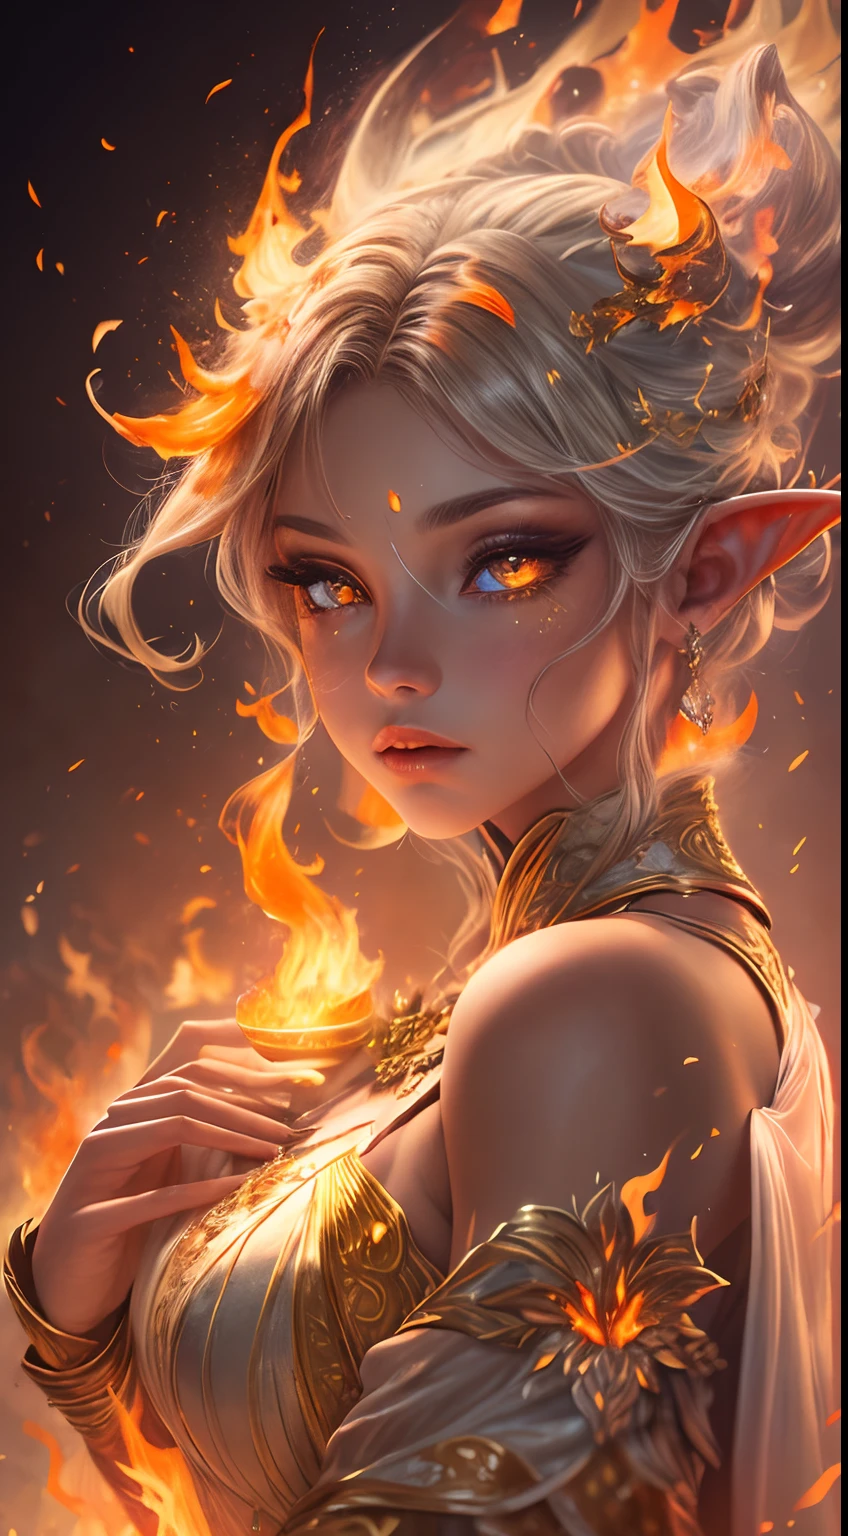 นี้ (แฟนตาซีที่สมจริง) ศิลปะประกอบด้วยถ่าน, เปลวไฟจริง, ความร้อนที่แท้จริง, และไฟที่สมจริง. Generate a masterpiece artwork of a  female fire druid กับ large (((สีส้มและสีทอง))) ดวงตา. The fire druid is awe-inspiring กับ beautiful ((realistic fiery ดวงตา)) alight กับ confidence and power. คุณสมบัติของเธอดูสง่างามและมีการกำหนดไว้อย่างดี, กับ ((ริมฝีปากนุ่มและบวม)), โครงสร้างกระดูกของเอลฟ์, และการแรเงาที่สมจริง. Her ดวงตา are important and should be the focal point of this artwork, กับ ((รายละเอียดที่สมจริงอย่างยิ่ง, รายละเอียดมาโคร, และระยิบระยับ.)) เธอสวมชุดเดรสระยิบระยับระยิบระยับที่ทำจากเปลวไฟและอัญมณีที่สมจริงซึ่งเปล่งประกายท่ามกลางแสงไฟ. ควันไฟและควันพลุ่งพล่านบนเสื้อท่อนบนอันประณีตของชุด. รวมการกระแทก, หิน, แสงสีรุ้งที่เร่าร้อน, ถ่านเรืองแสง, ผ้าไหมและผ้าซาตินและเครื่องหนัง, พื้นหลังที่น่าสนใจ, และองค์ประกอบแฟนตาซีอันหนักหน่วง. กล้อง: ใช้เทคนิคการจัดองค์ประกอบแบบไดนามิกเพื่อเพิ่มเปลวไฟที่สมจริง.